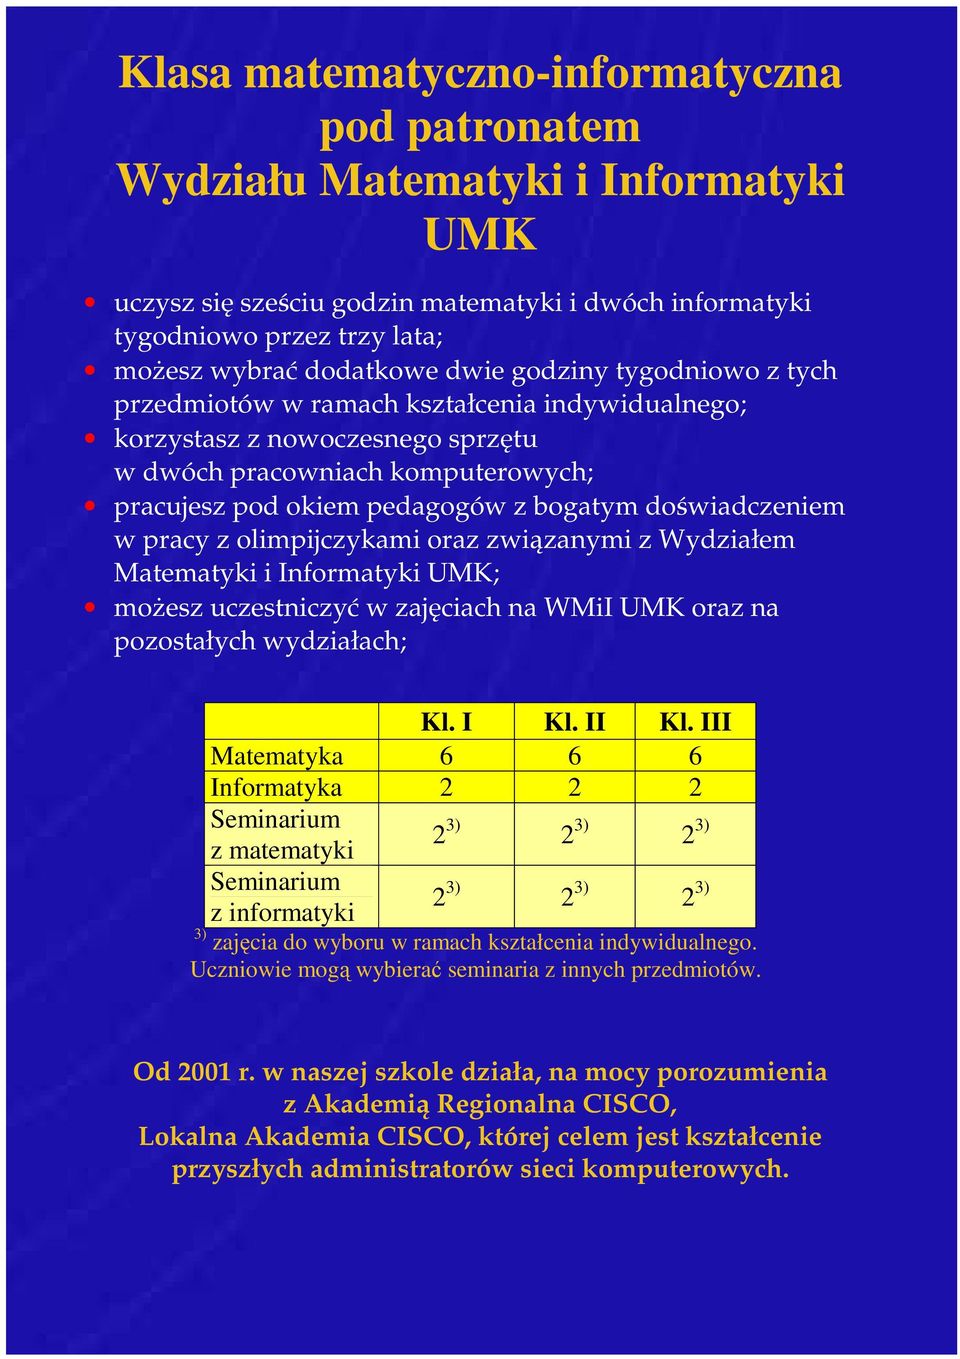 w pracy z olimpijczykami oraz związanymi z Wydziałem Matematyki i Informatyki UMK; moŝesz uczestniczyć w zajęciach na WMiI UMK oraz na pozostałych wydziałach; Kl. I Kl. II Kl.